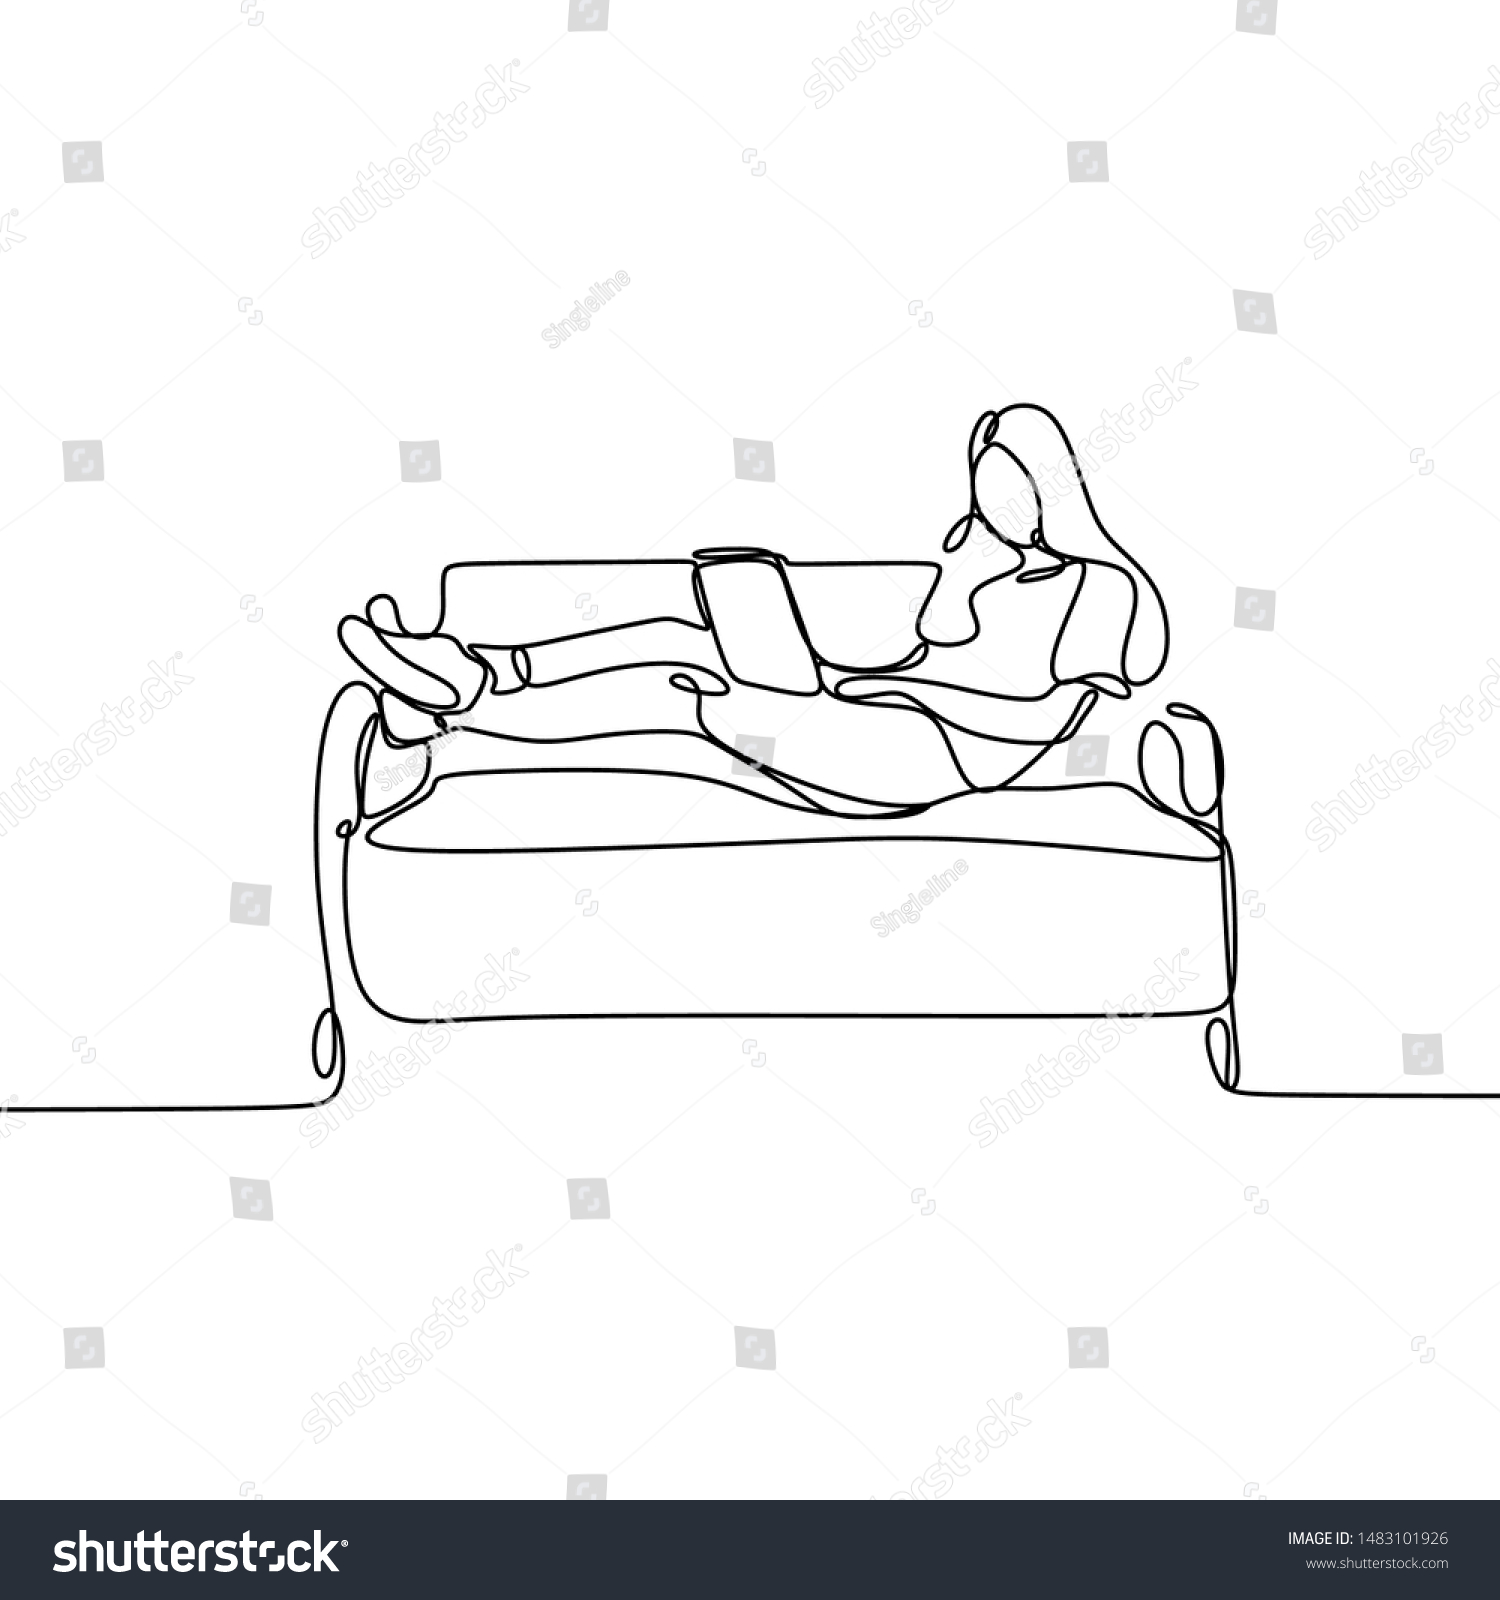 человек на диване рисунок карандашом